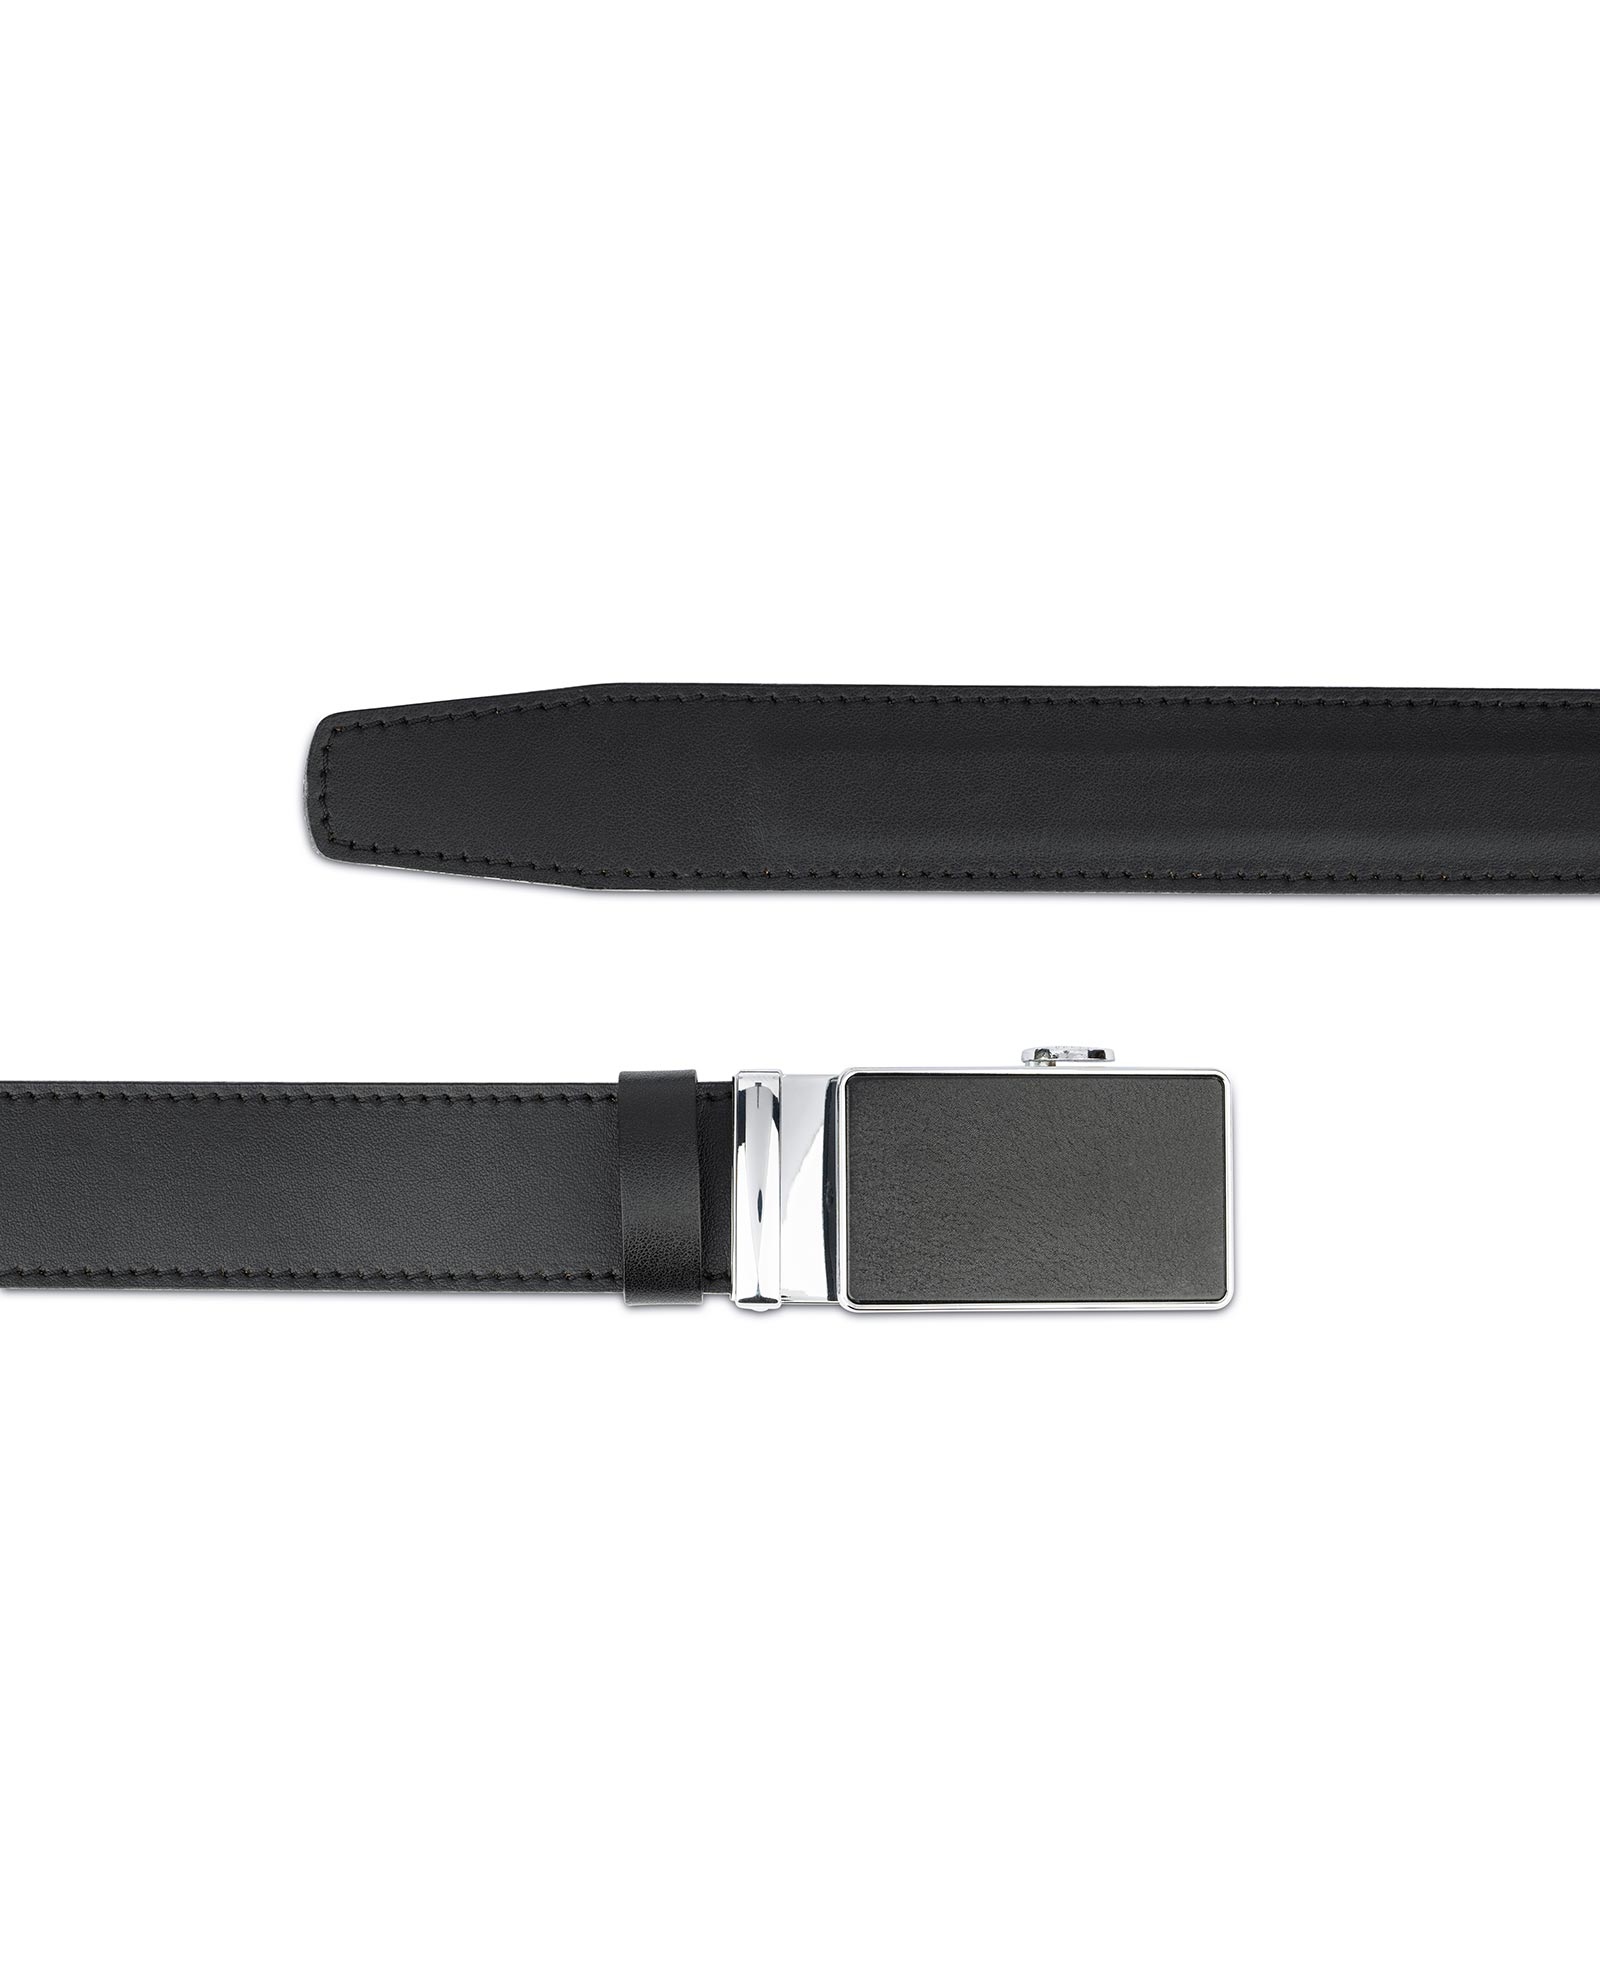 Buy Black Ratcheting Leather Belt for Men | LeatherBeltsOnline.com